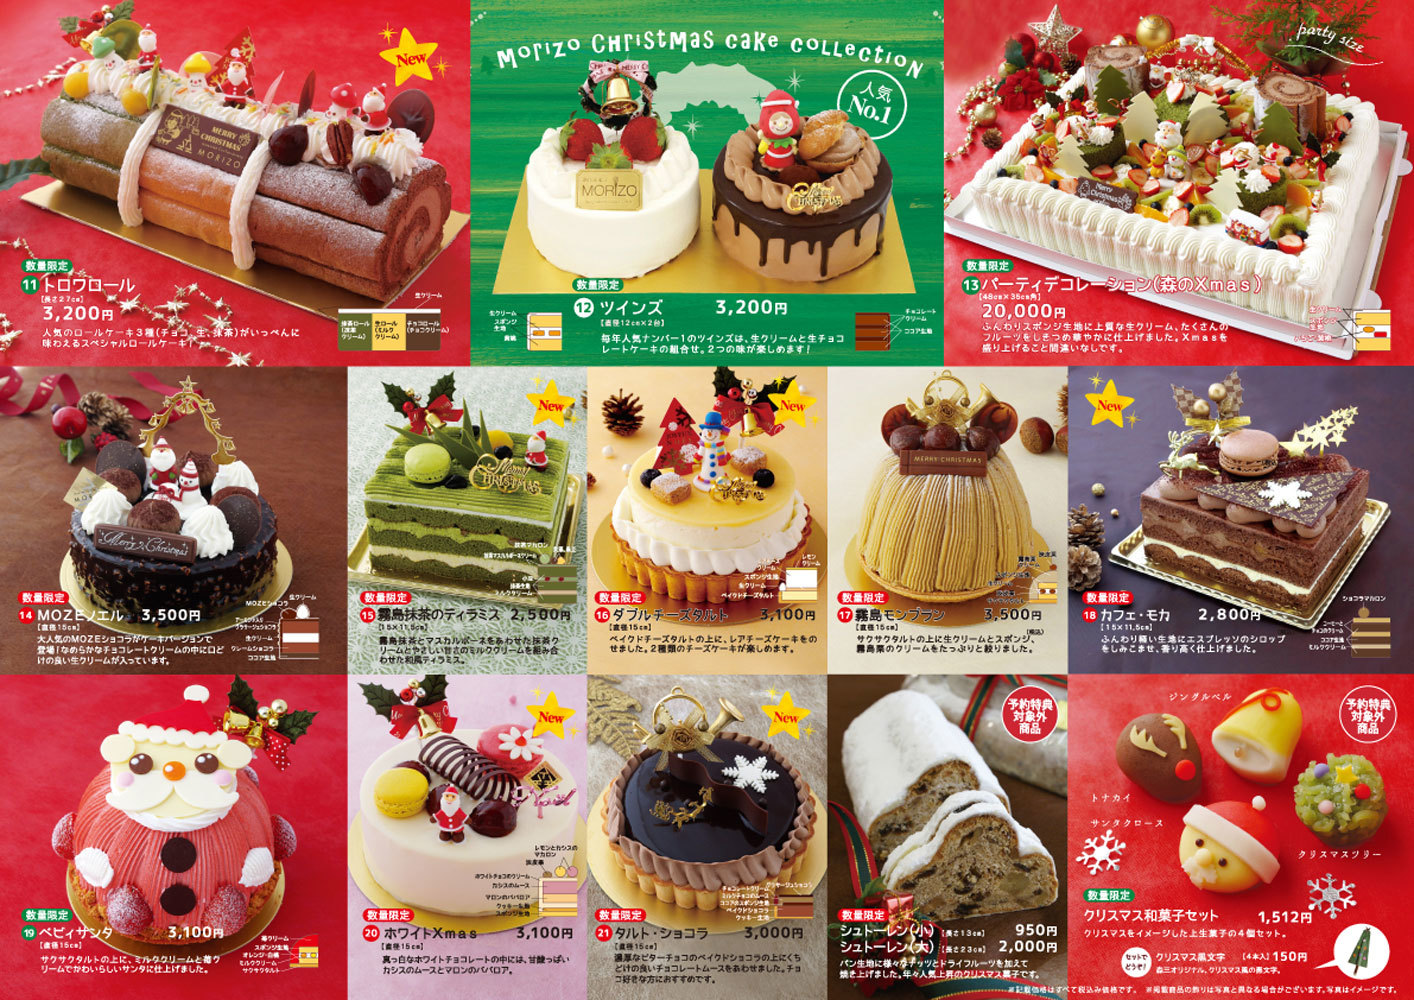 クリスマスケーキ 19 和菓子 洋菓子 ロールケーキの森三